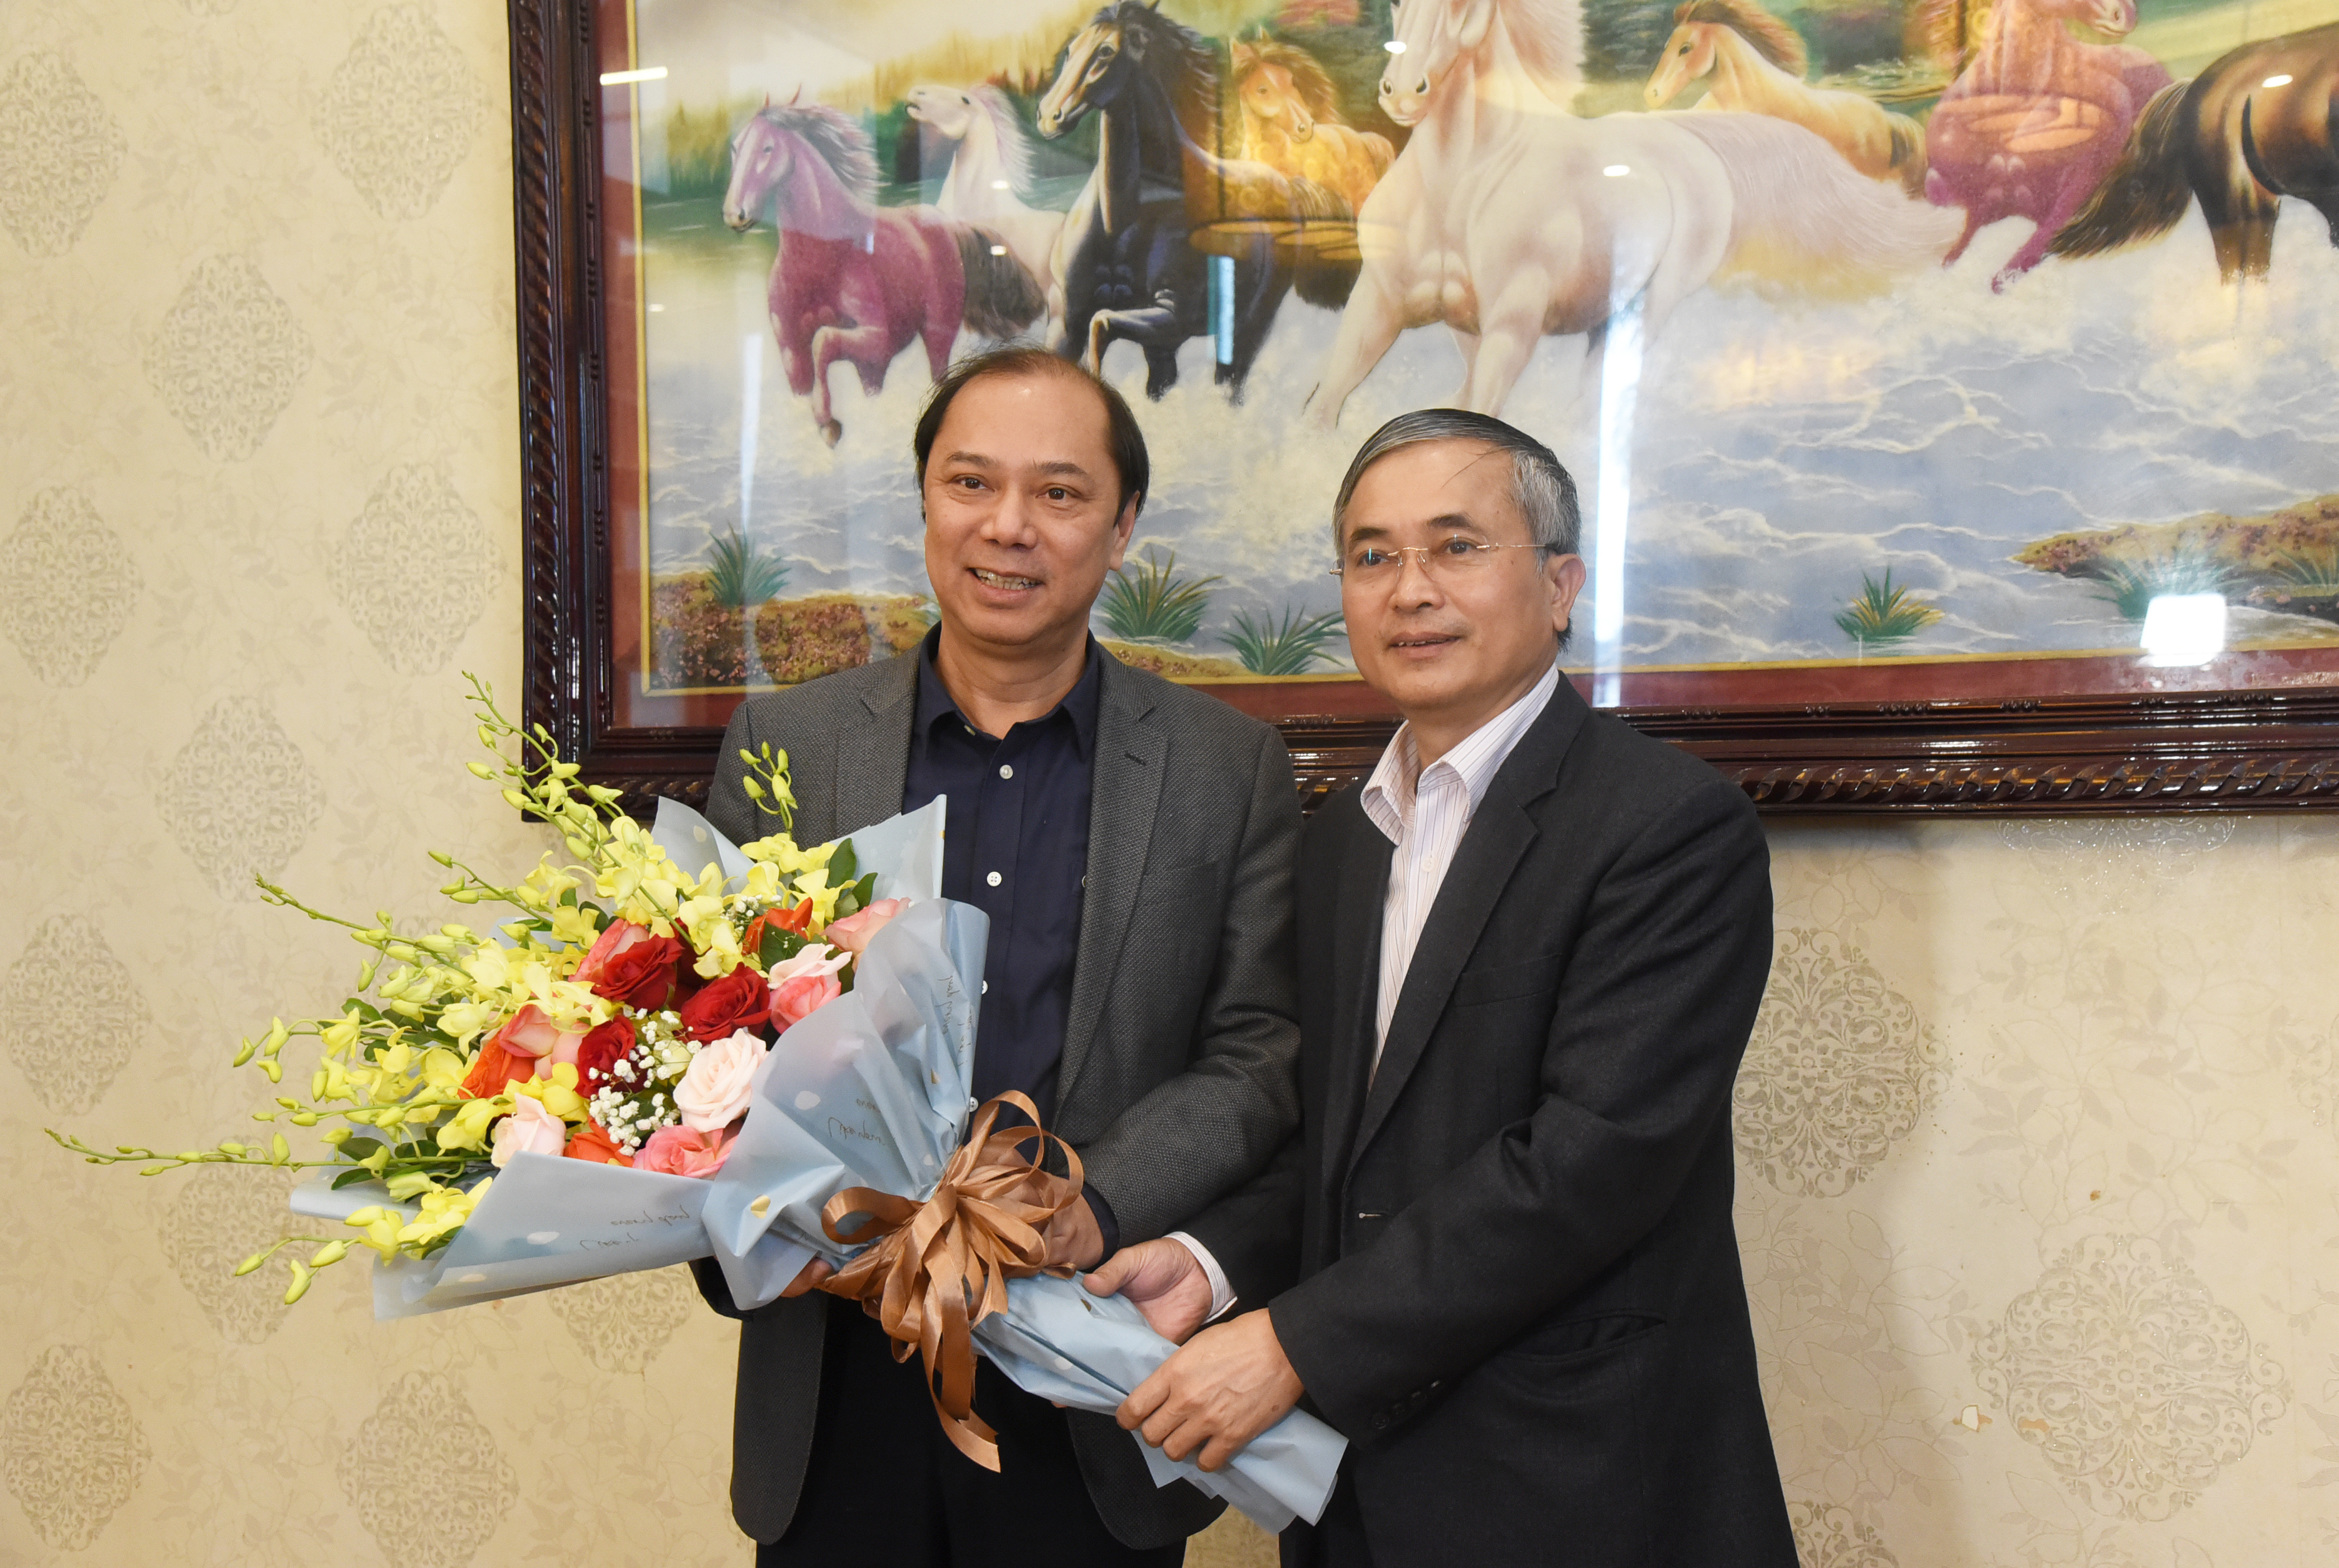 Lãnh đạo tỉnh Nghệ An tặng hoa chúc mừng đồng chí Nguyễn Quốc Dũng được bổ nhiệm làm Đại sứ Việt Nam tại Hoa Kỳ nhiệm kỳ 2022-2024. Ảnh: TG